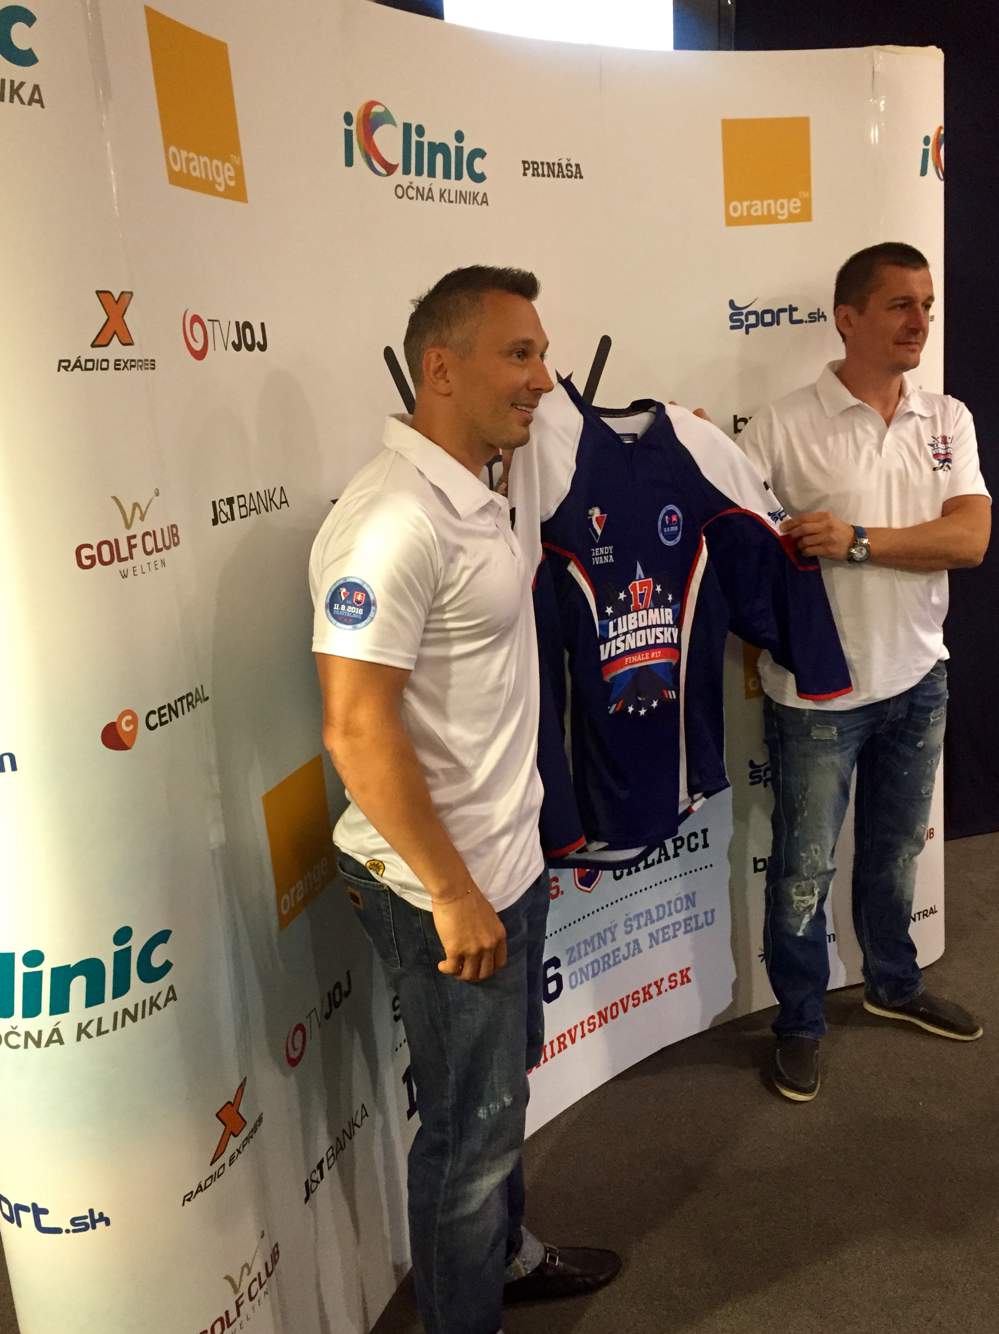 iClinic prináša rozlúčkový charitatívny zápas hokejových hviezd pod záštitou Ľubomíra Višňovského.